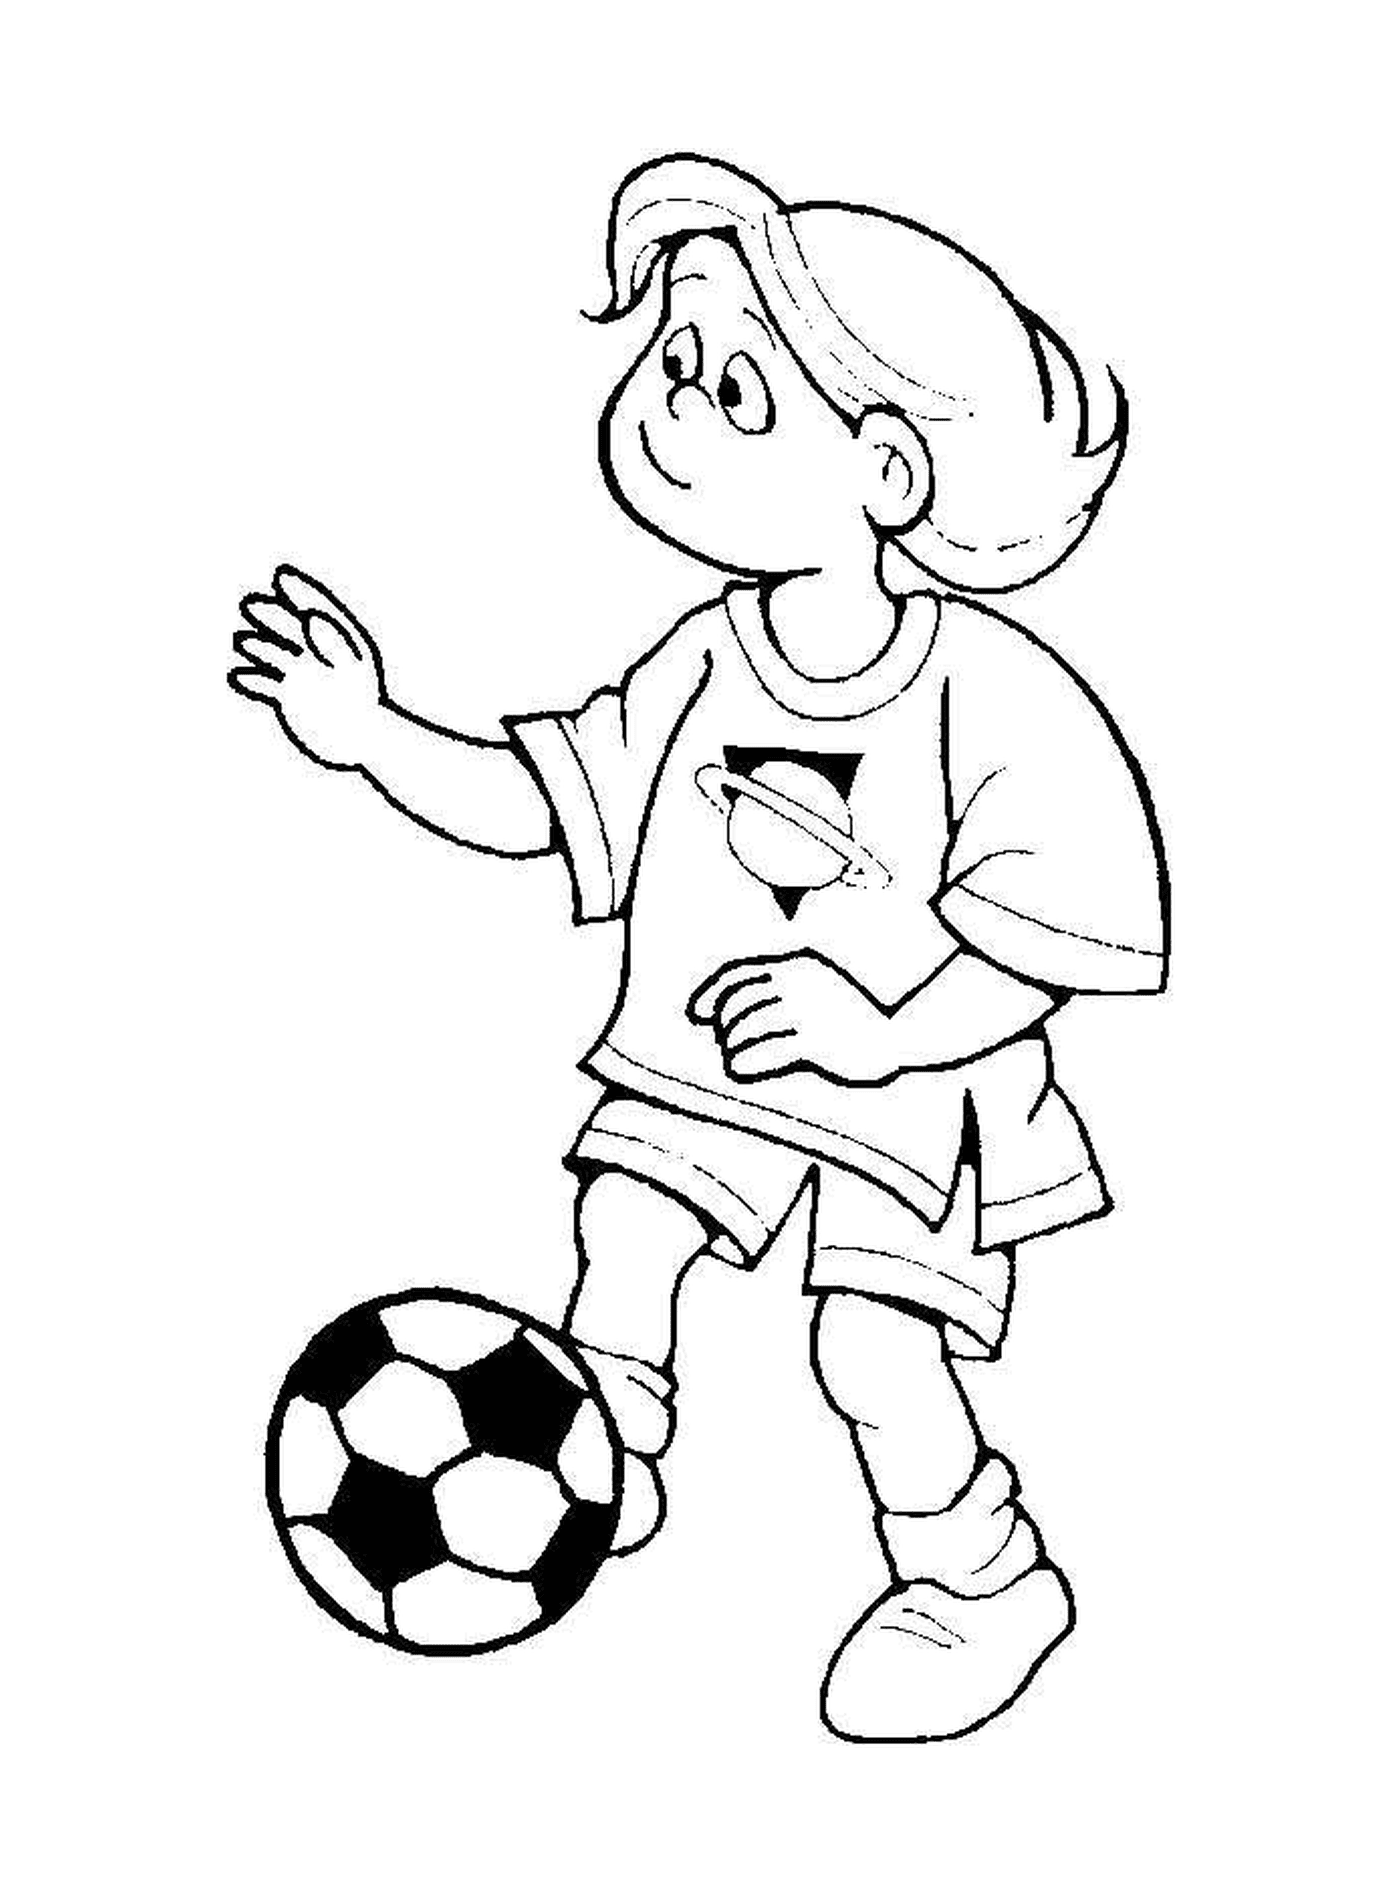   Enfant qui joue au foot 